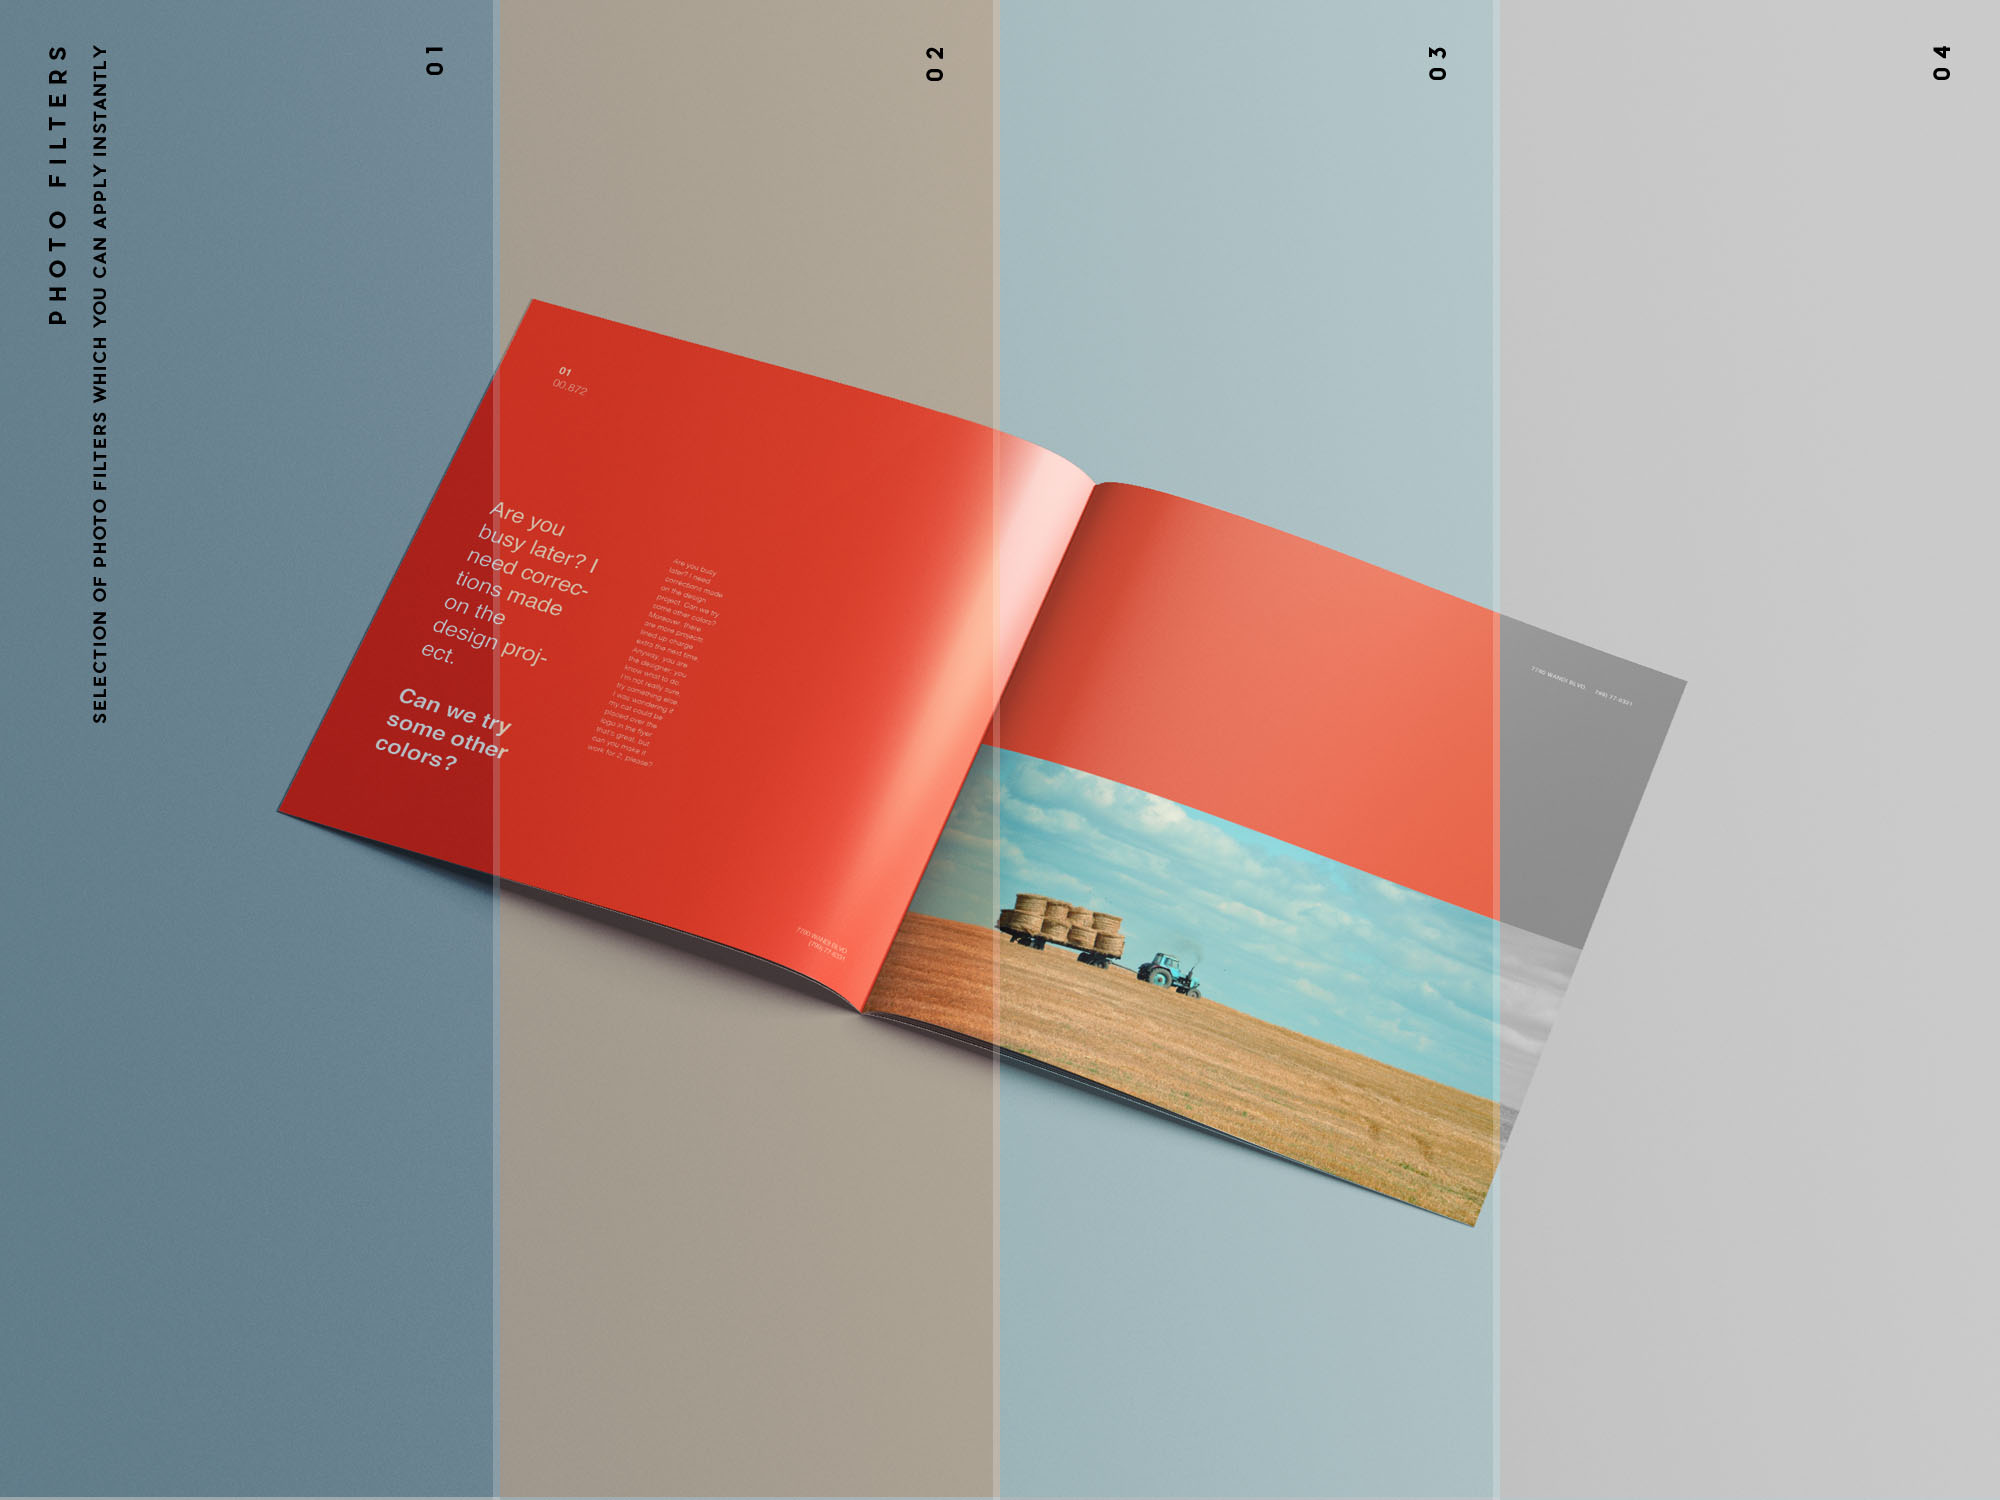 9个高质量方形小册子宣传册杂志画册设计贴图样机模板 Squa